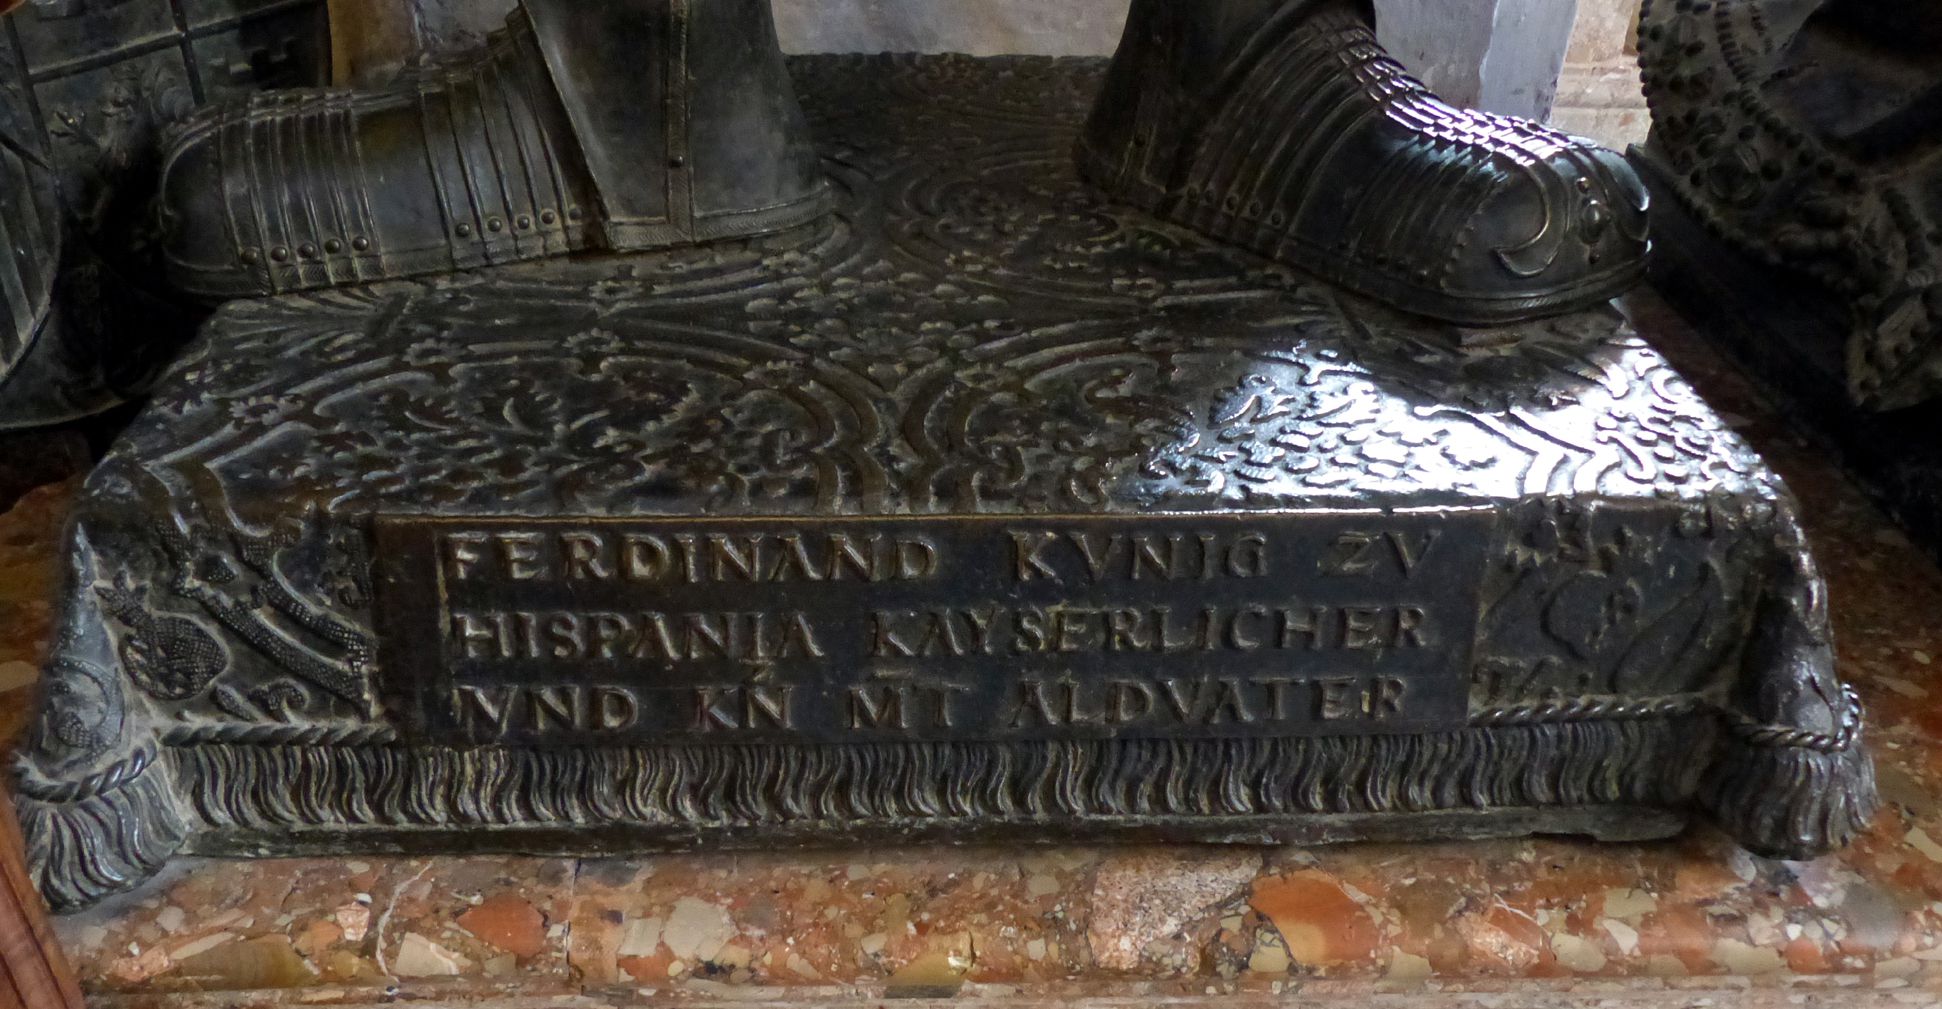 Ferdinand of Aragón (Innsbruck) Pedestal with inscription: FERDINAND KVNIG ZV / HISPANIA KAYSERLICHER / VND KN MT ALDVATER